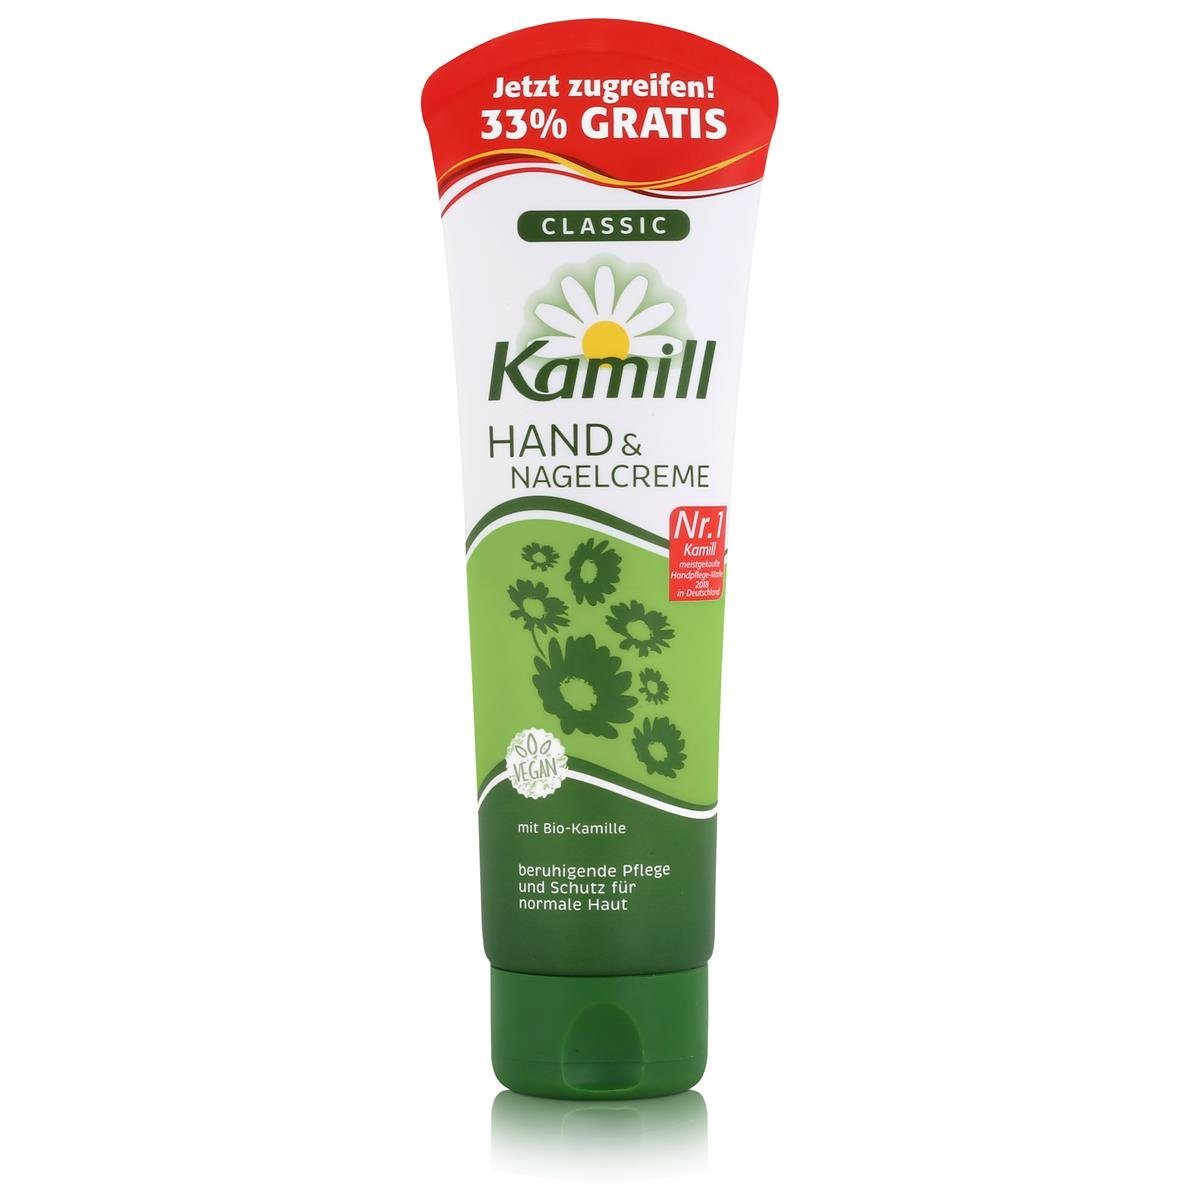 Hautcreme natürlicher Kamill Classic - Hand & mit Kamill 133 Kamille ml Nagelcreme